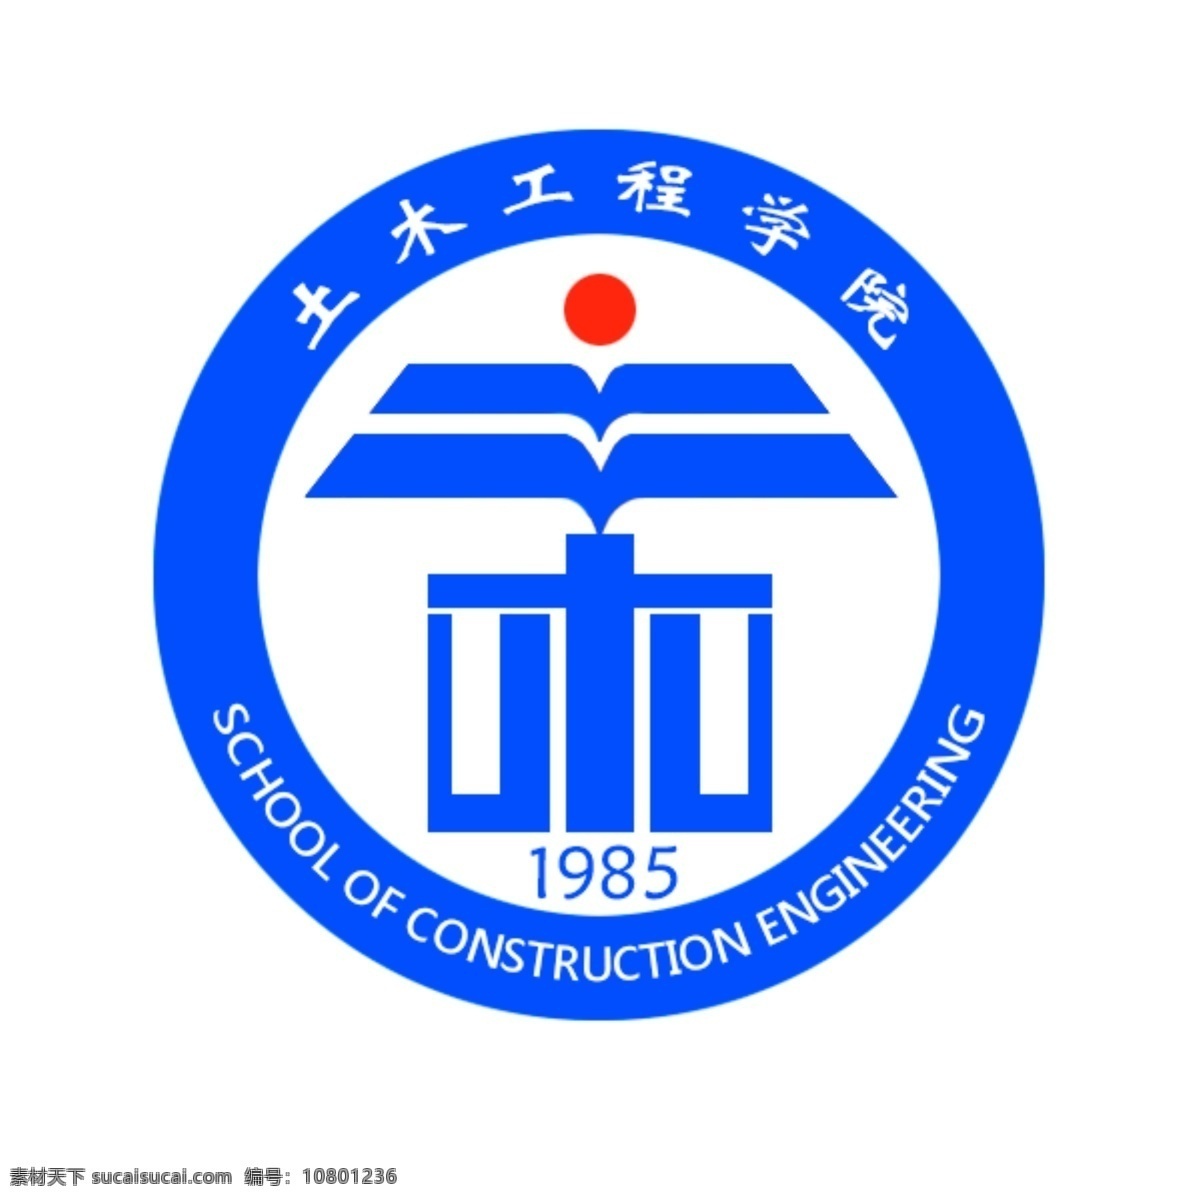 苏州 科技 学院 土木工程 院 徽 logo 院徽 白色